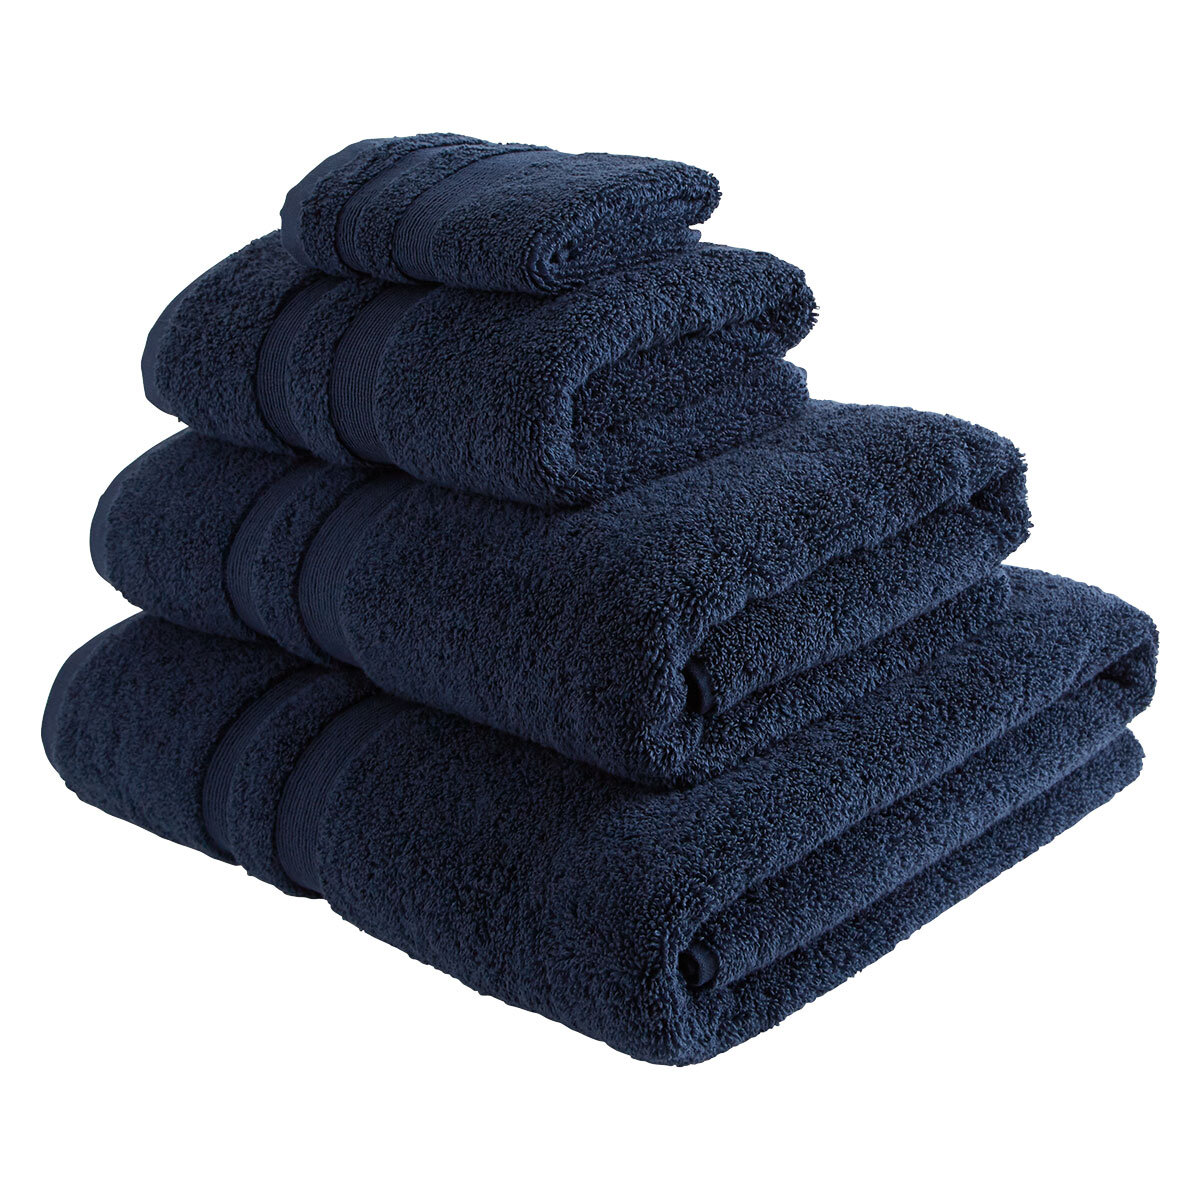 Bath towels, £28 Habitat